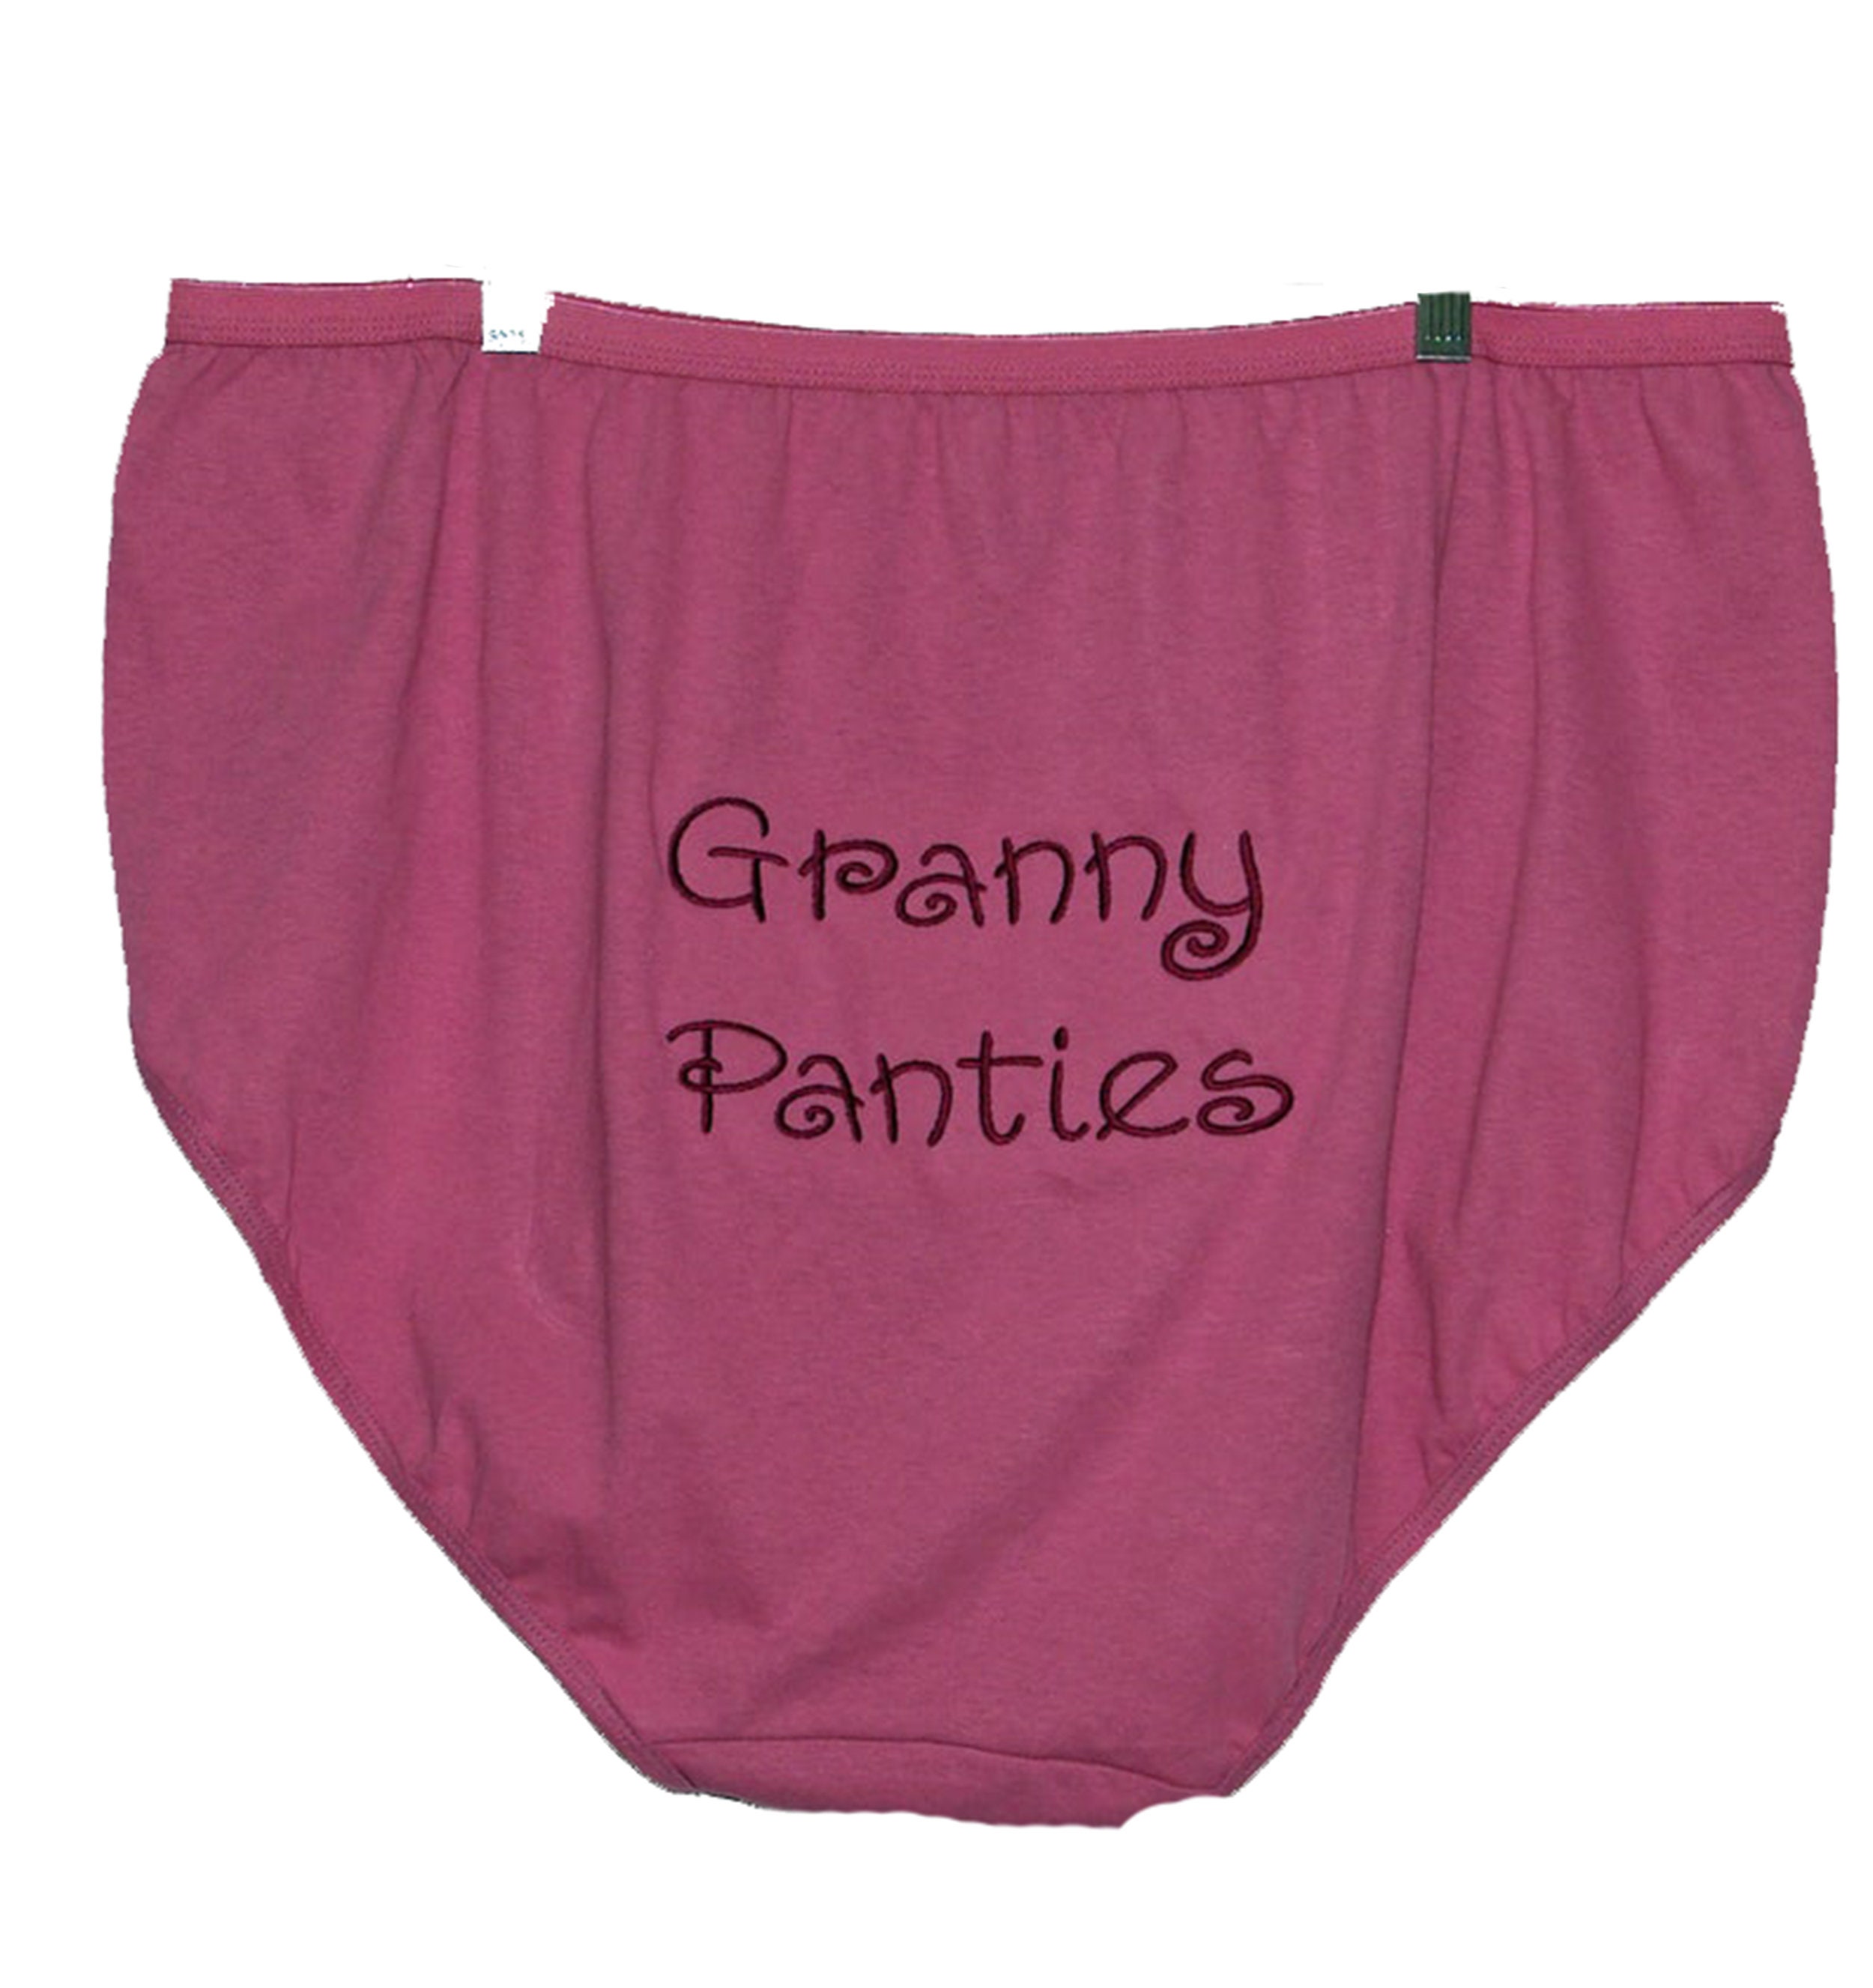 Grannies in panties